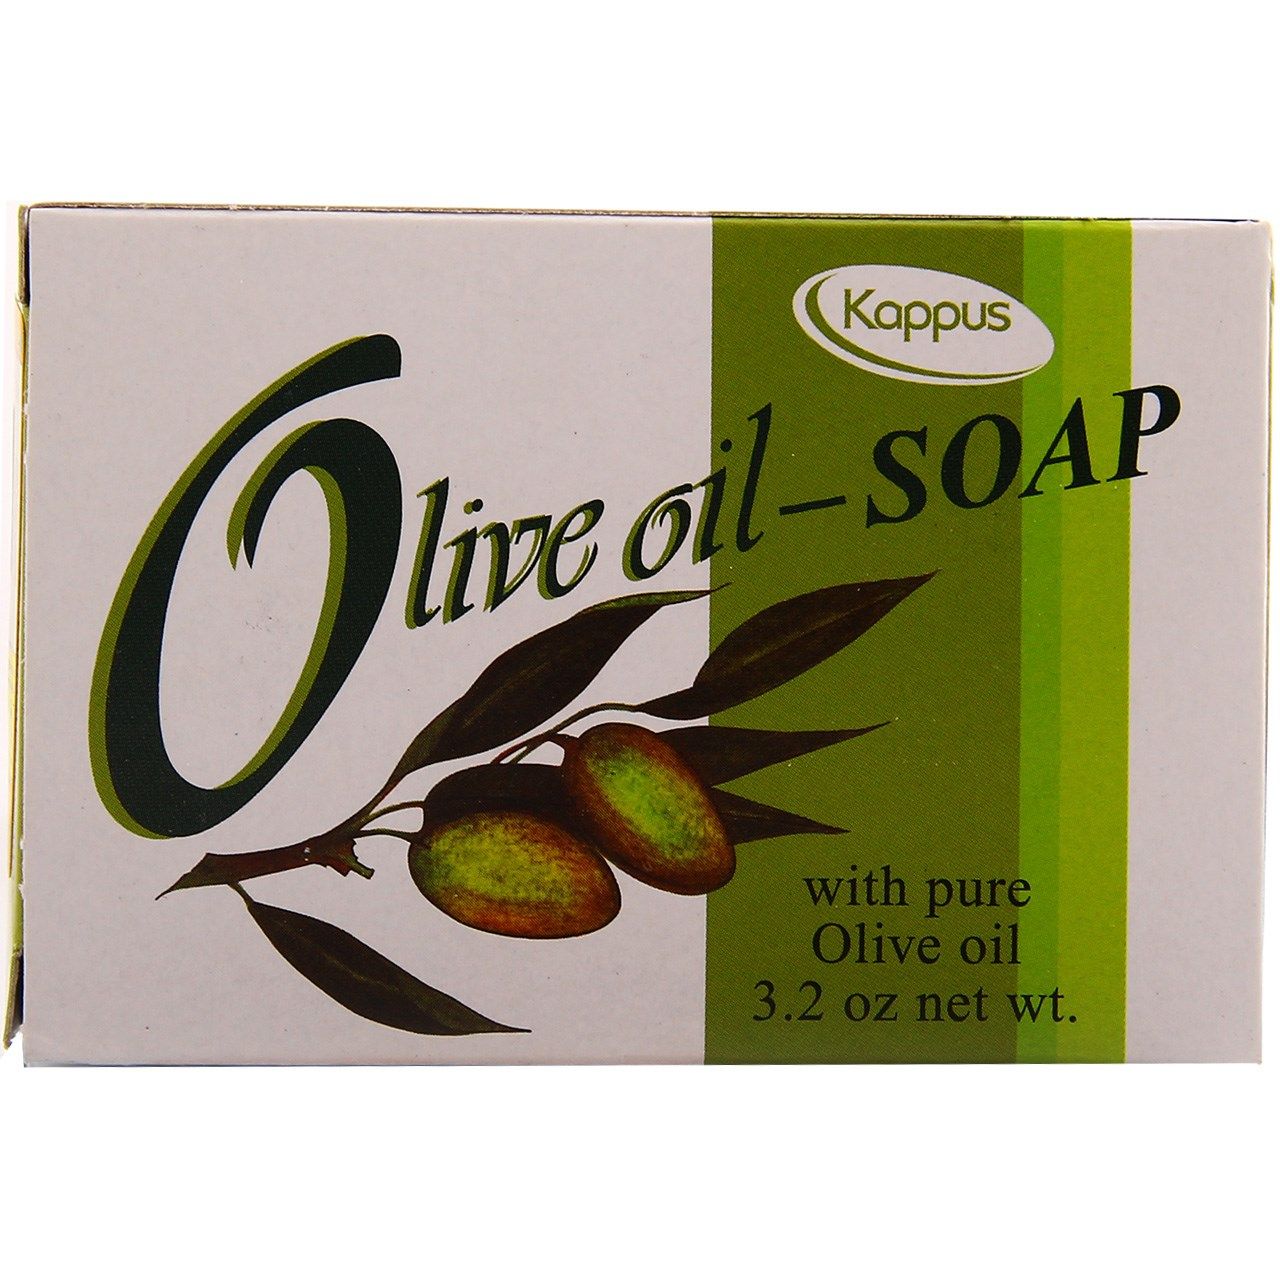 صابون شستشو کاپوس مدل Olive Oil وزن 100 گرم -  - 1